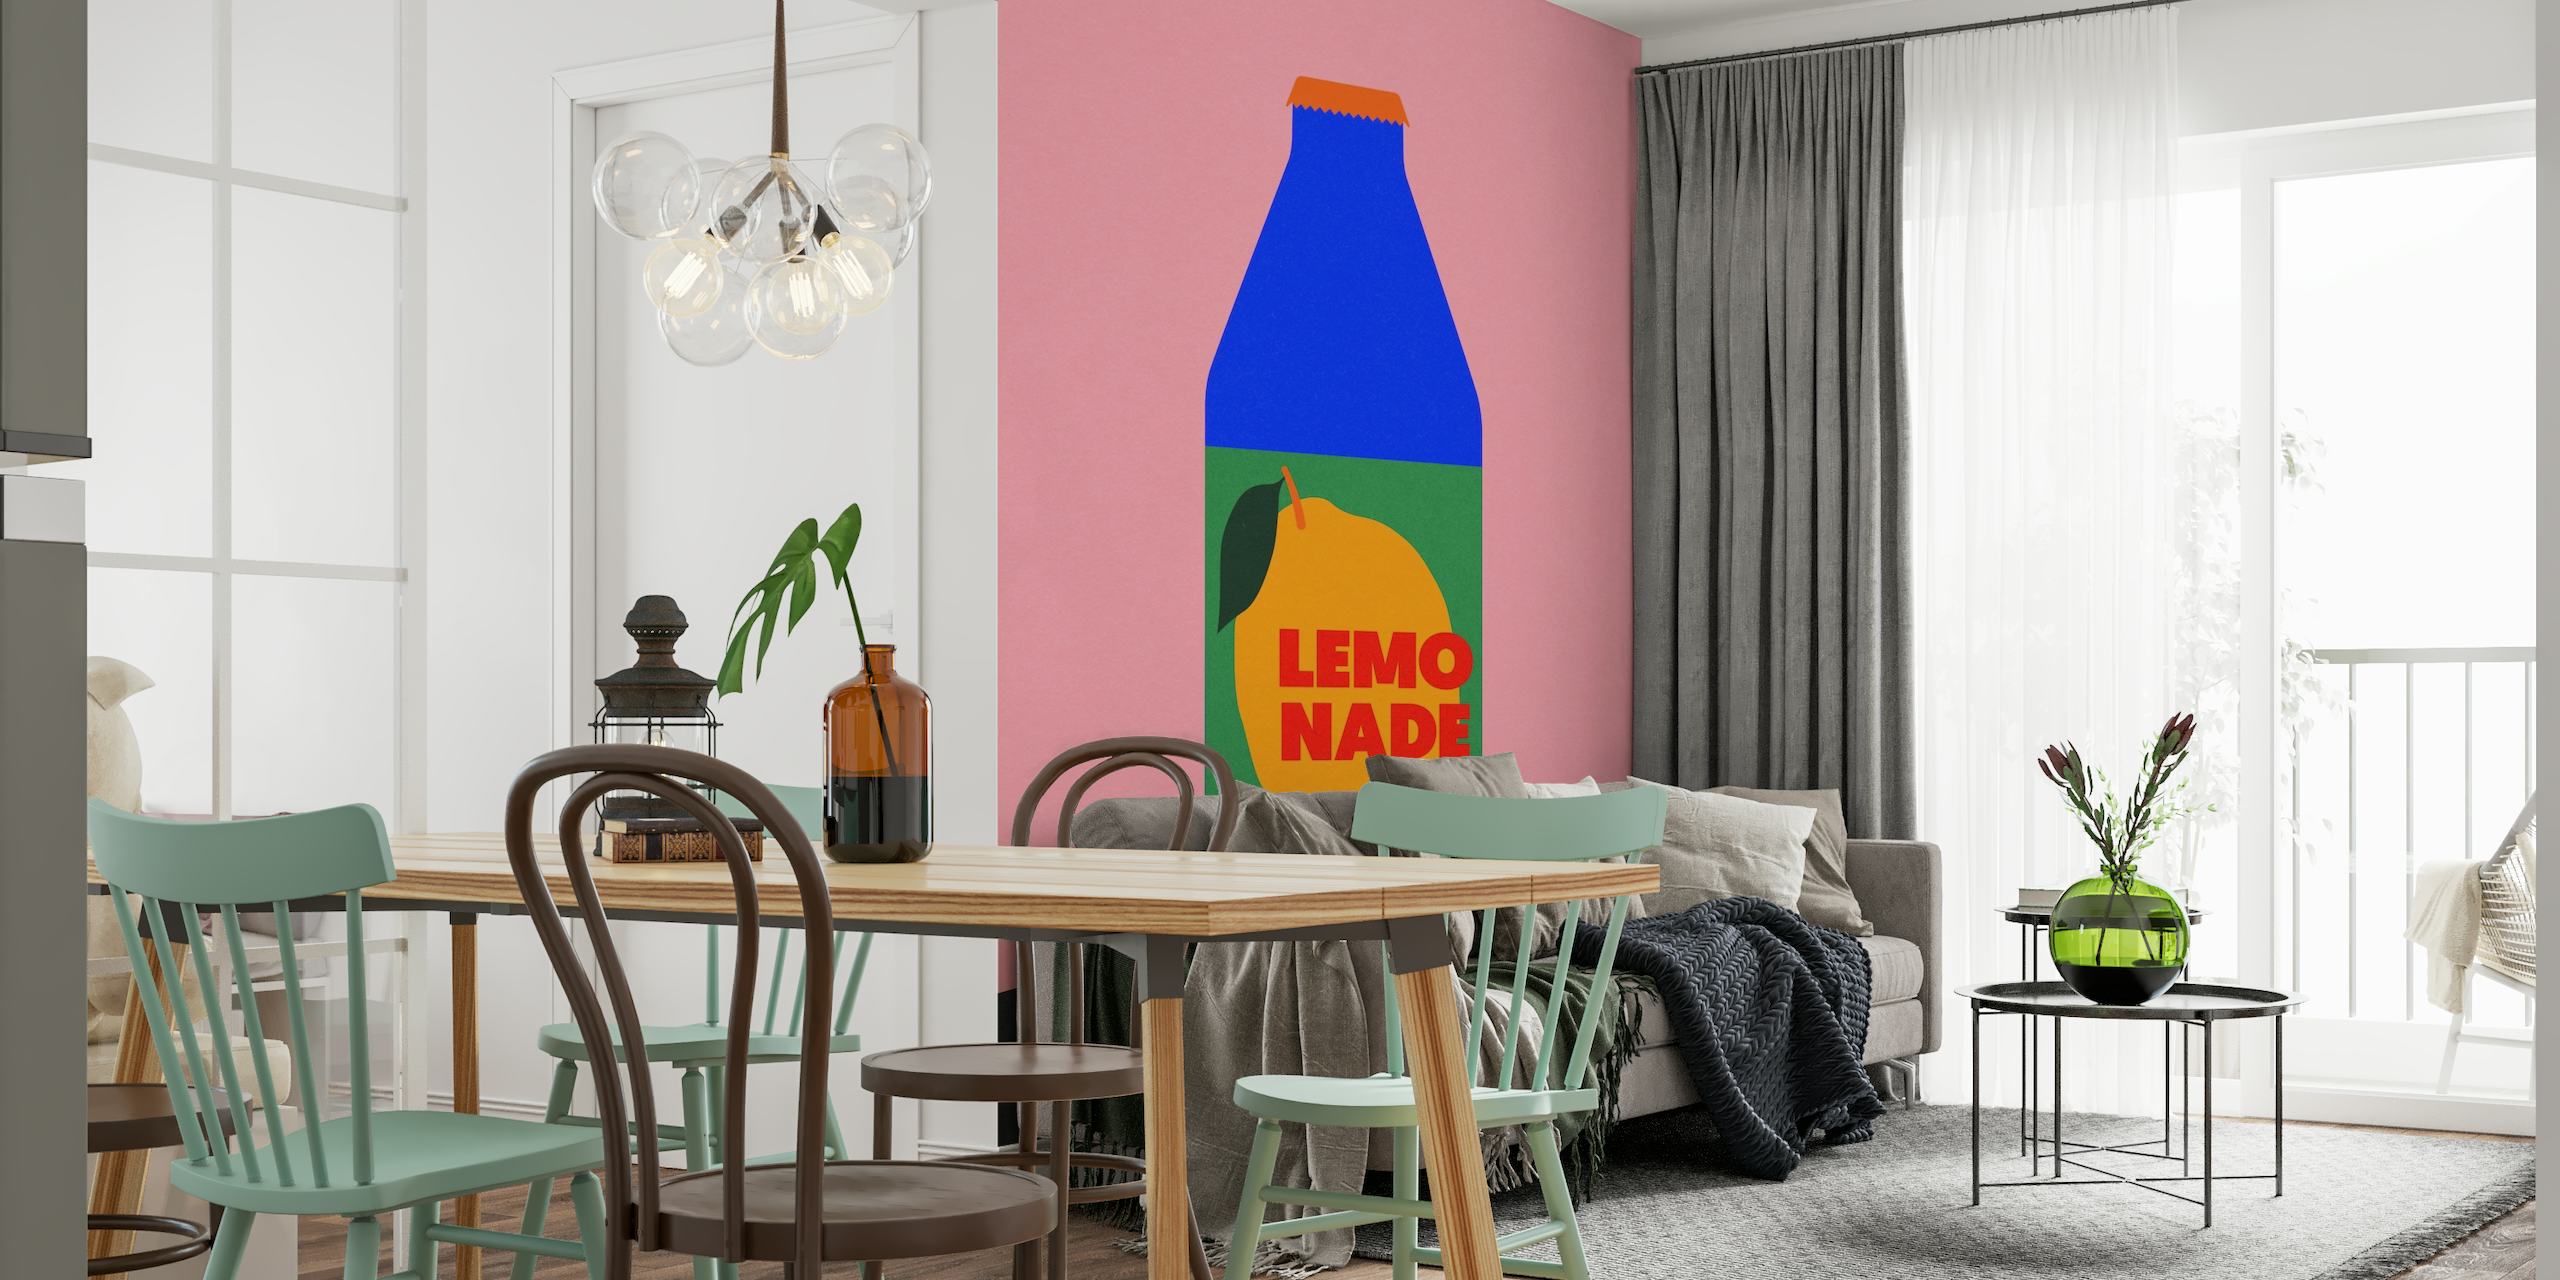 Carta da parati moderna 'Lemo Nade' con sfondo rosa e illustrazione di una bottiglia blu